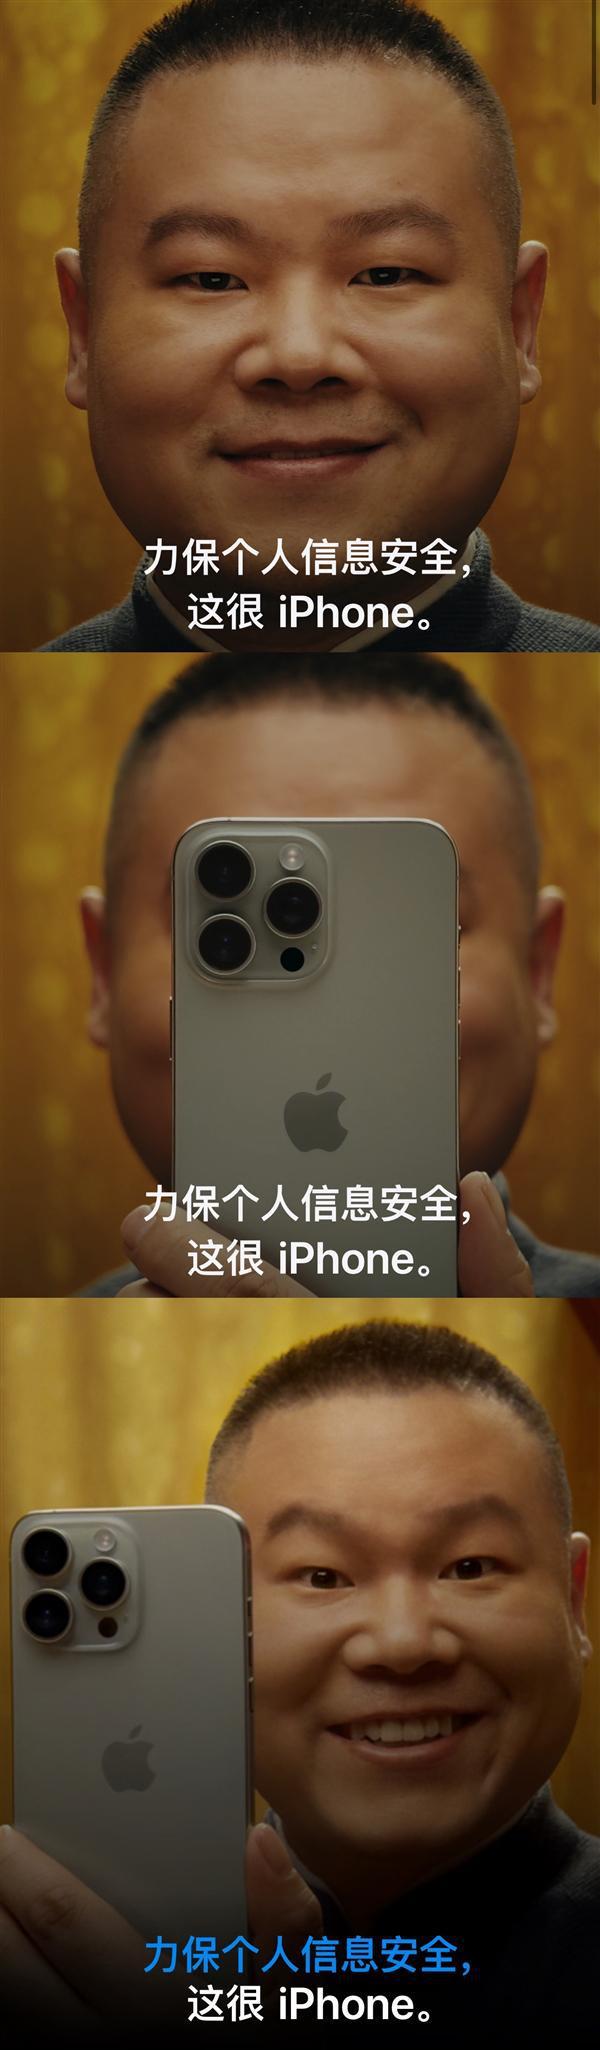 接地气，苹果找了岳云鹏出演隐私安全广告短片